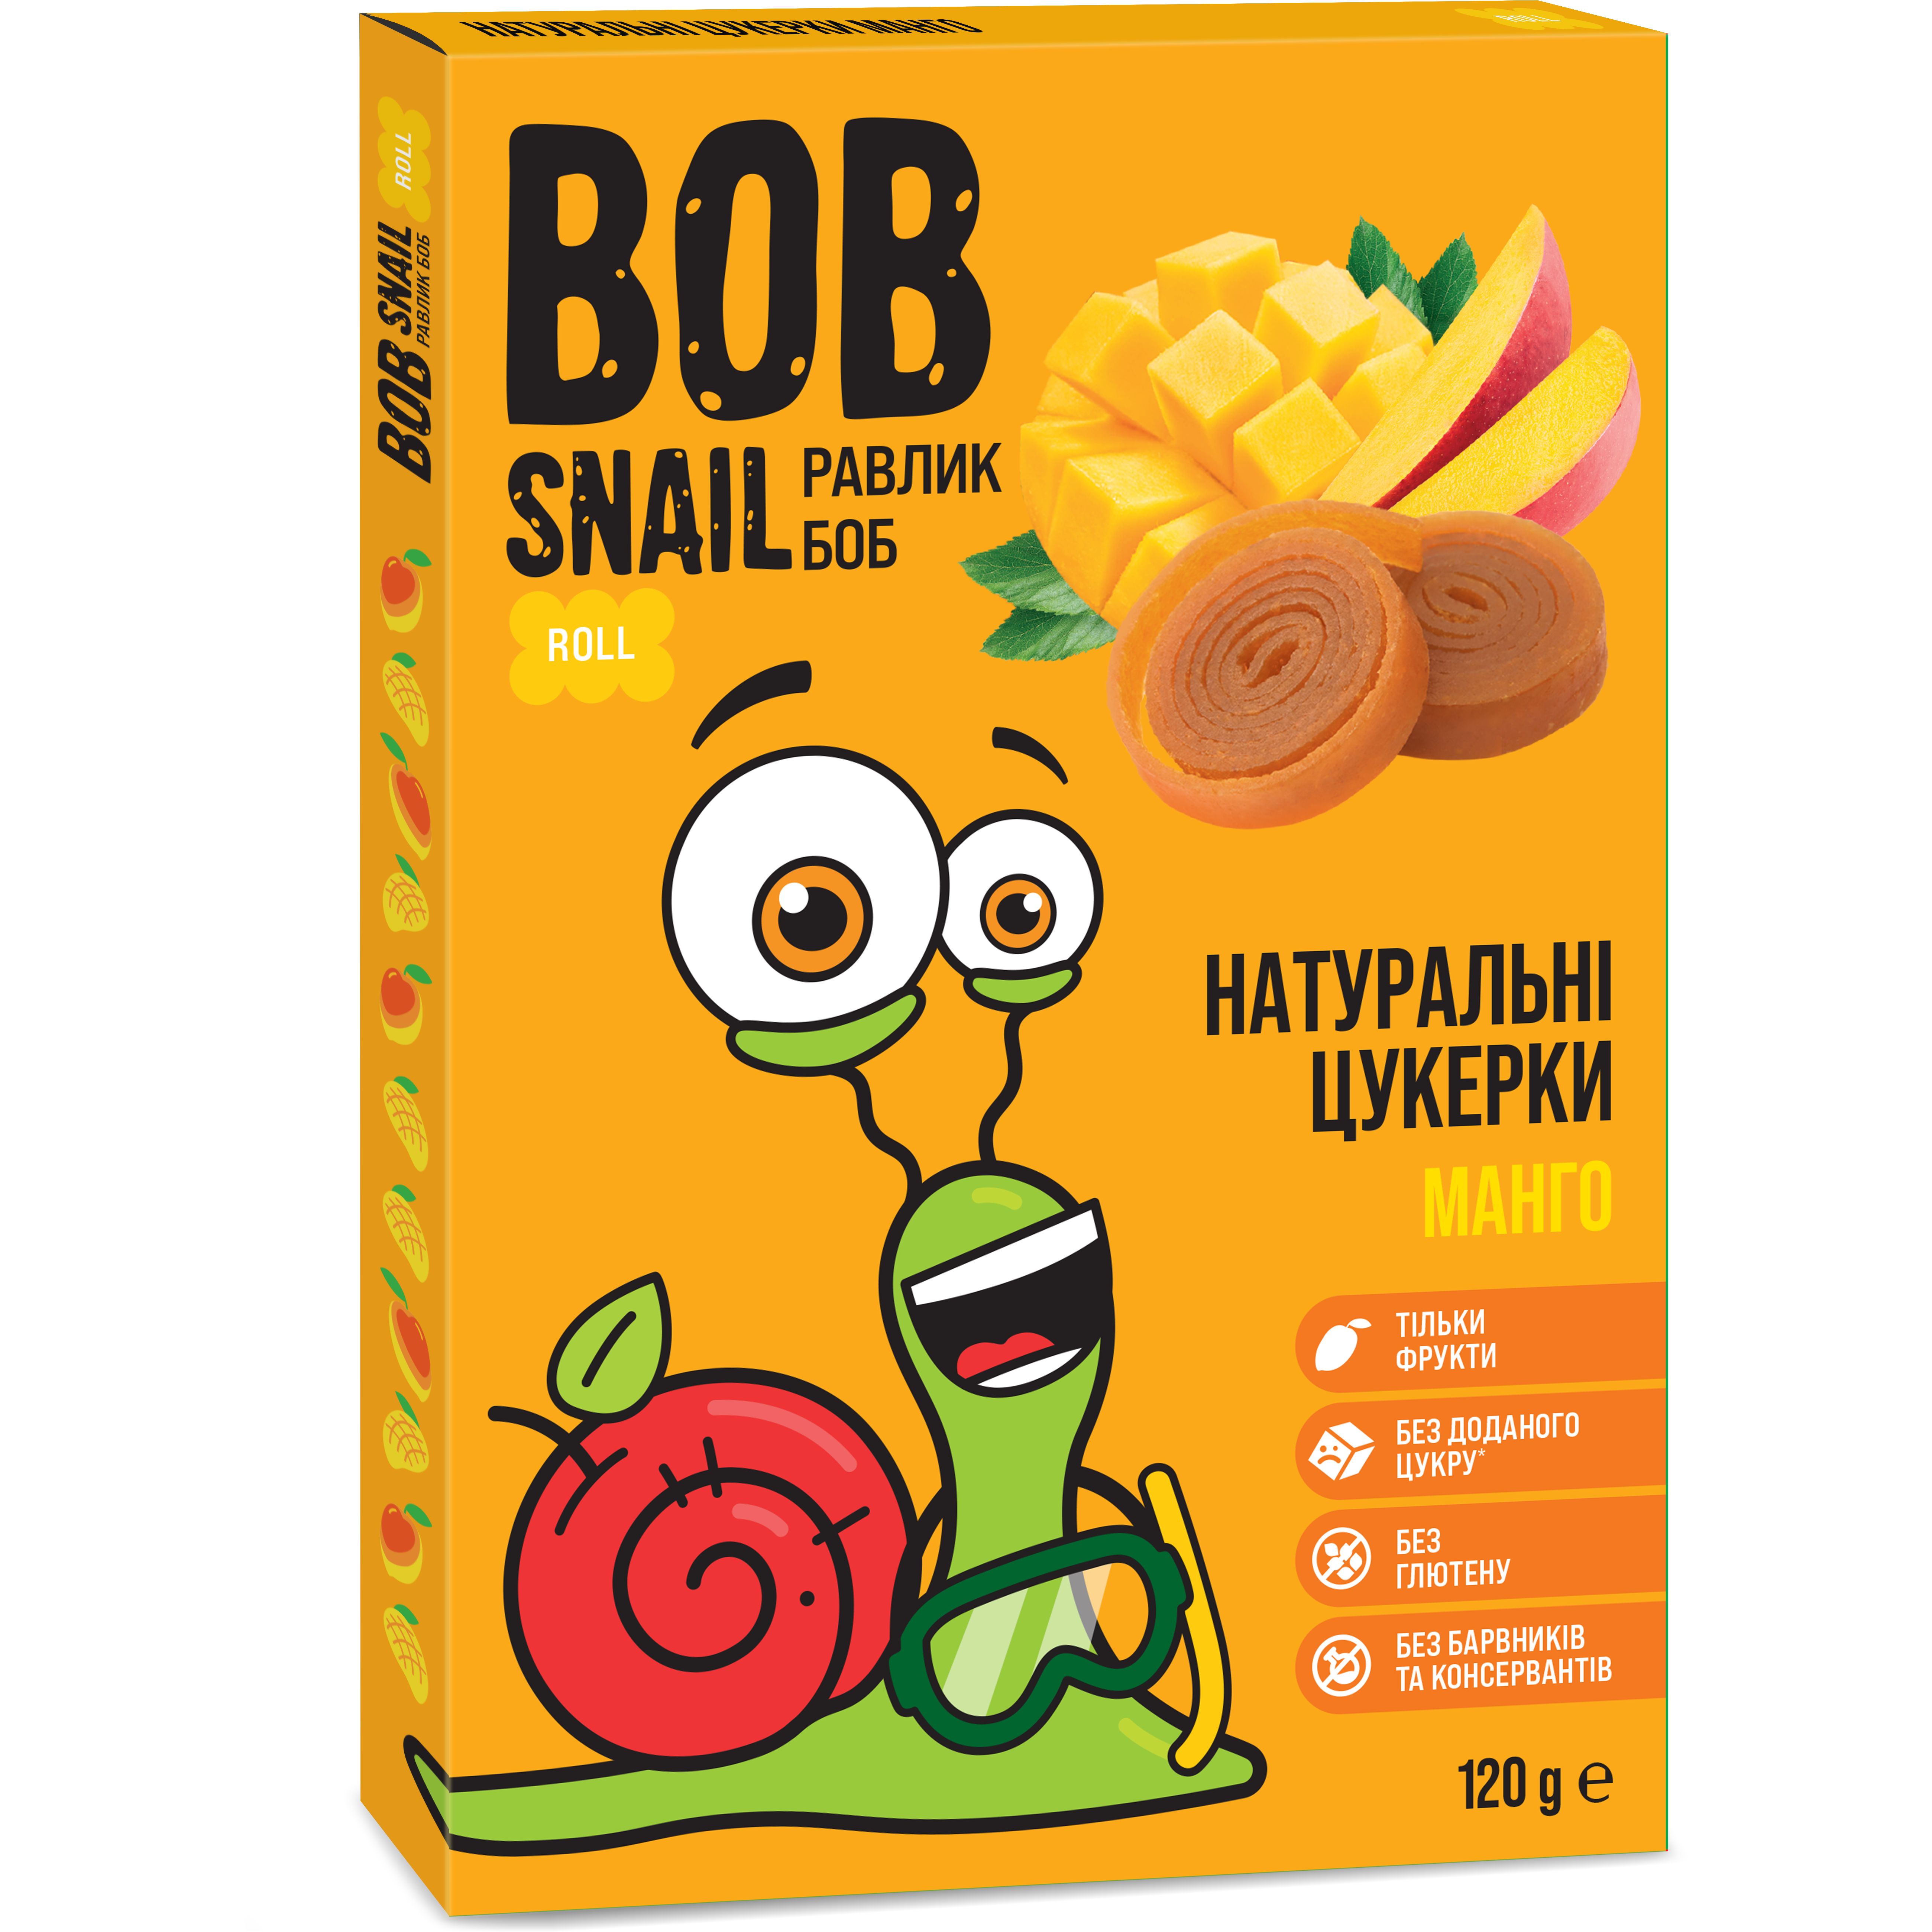 Фруктові мангові цукерки Bob Snail 120 г - фото 1